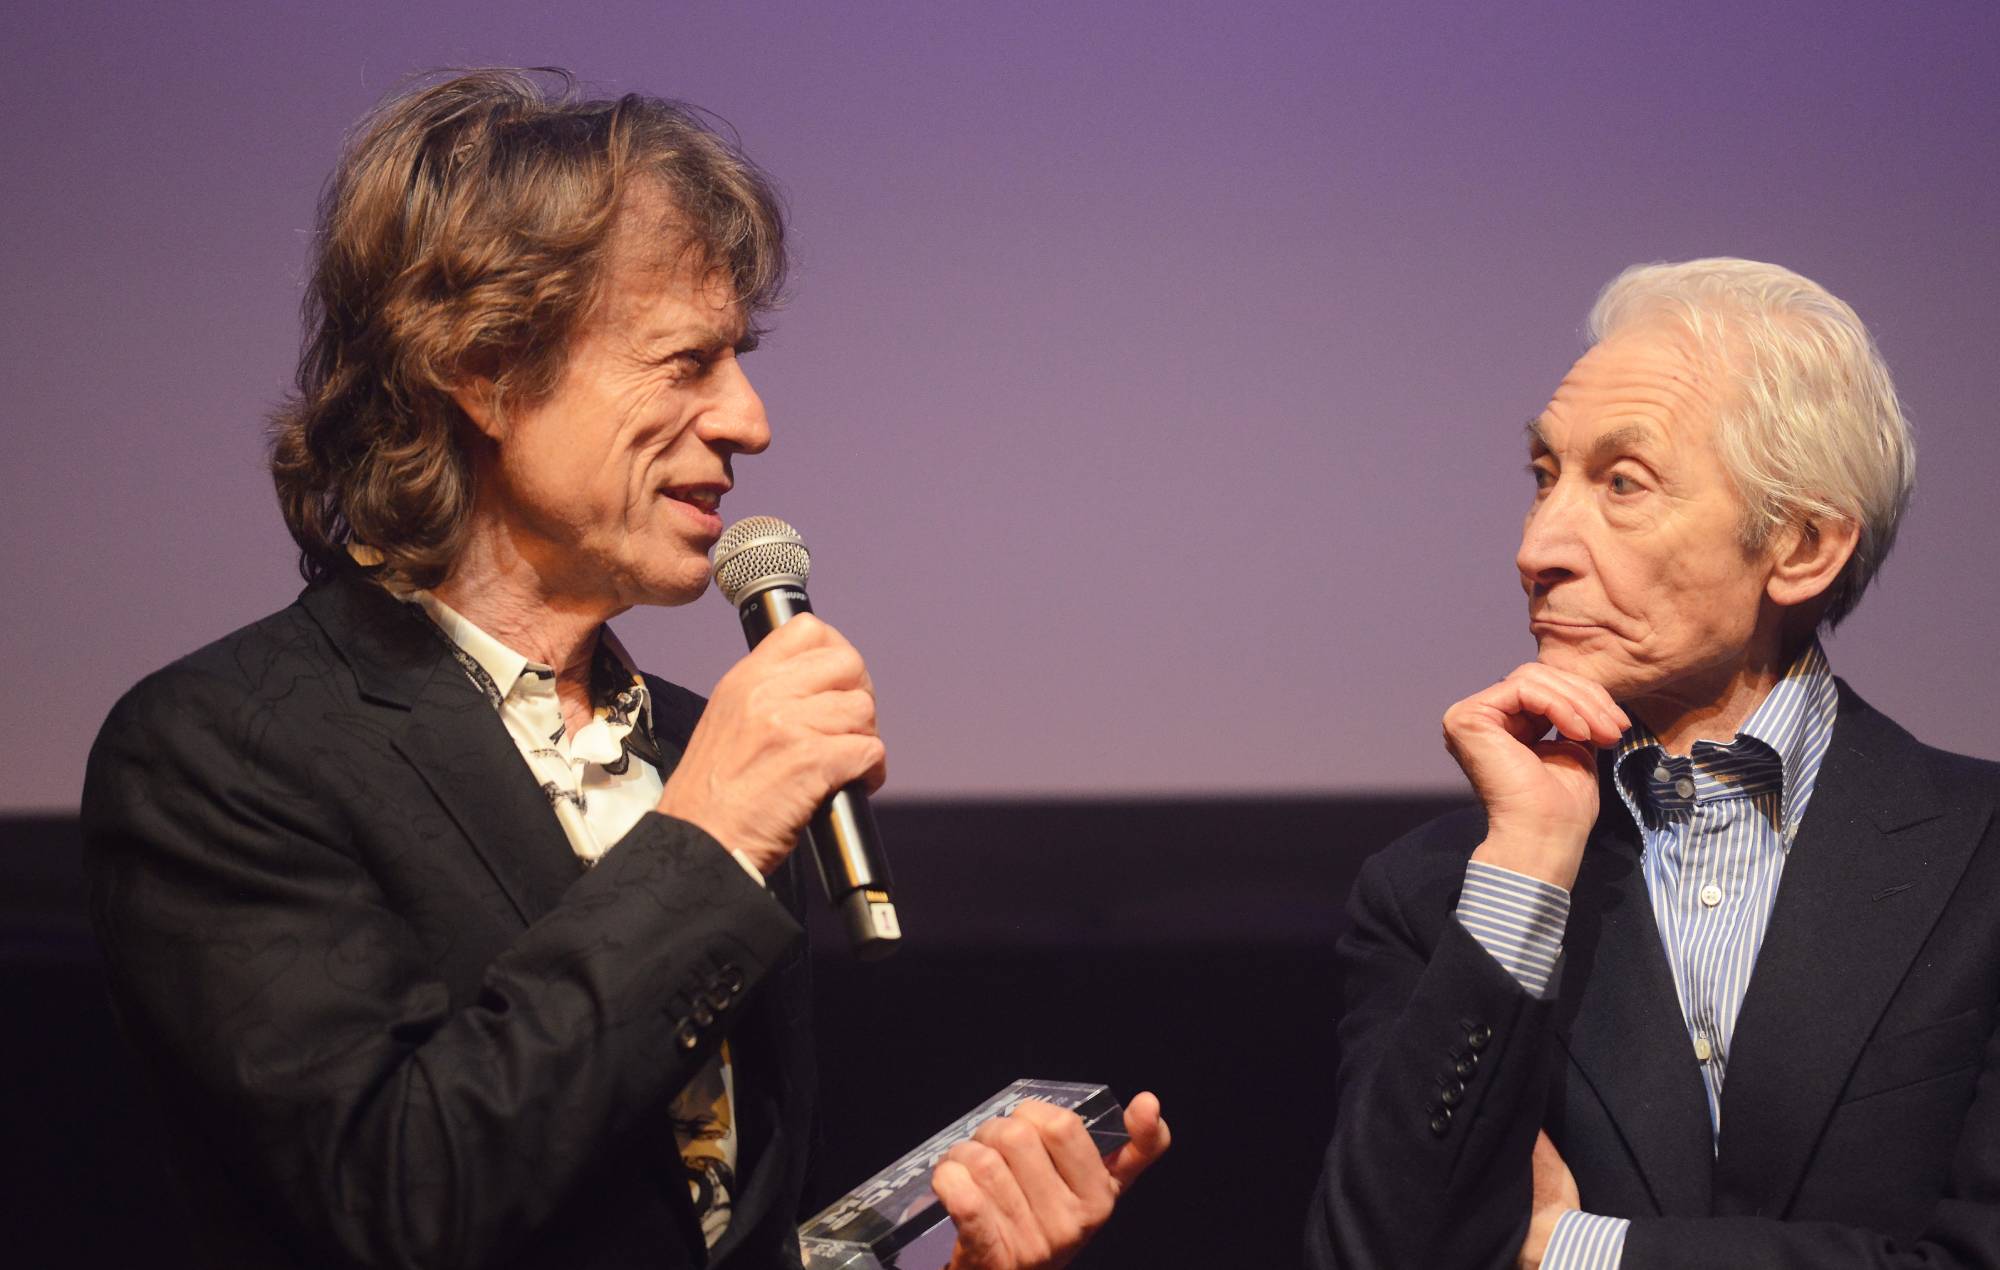 Mick Jagger recuerda a su "gran amigo" Charlie Watts